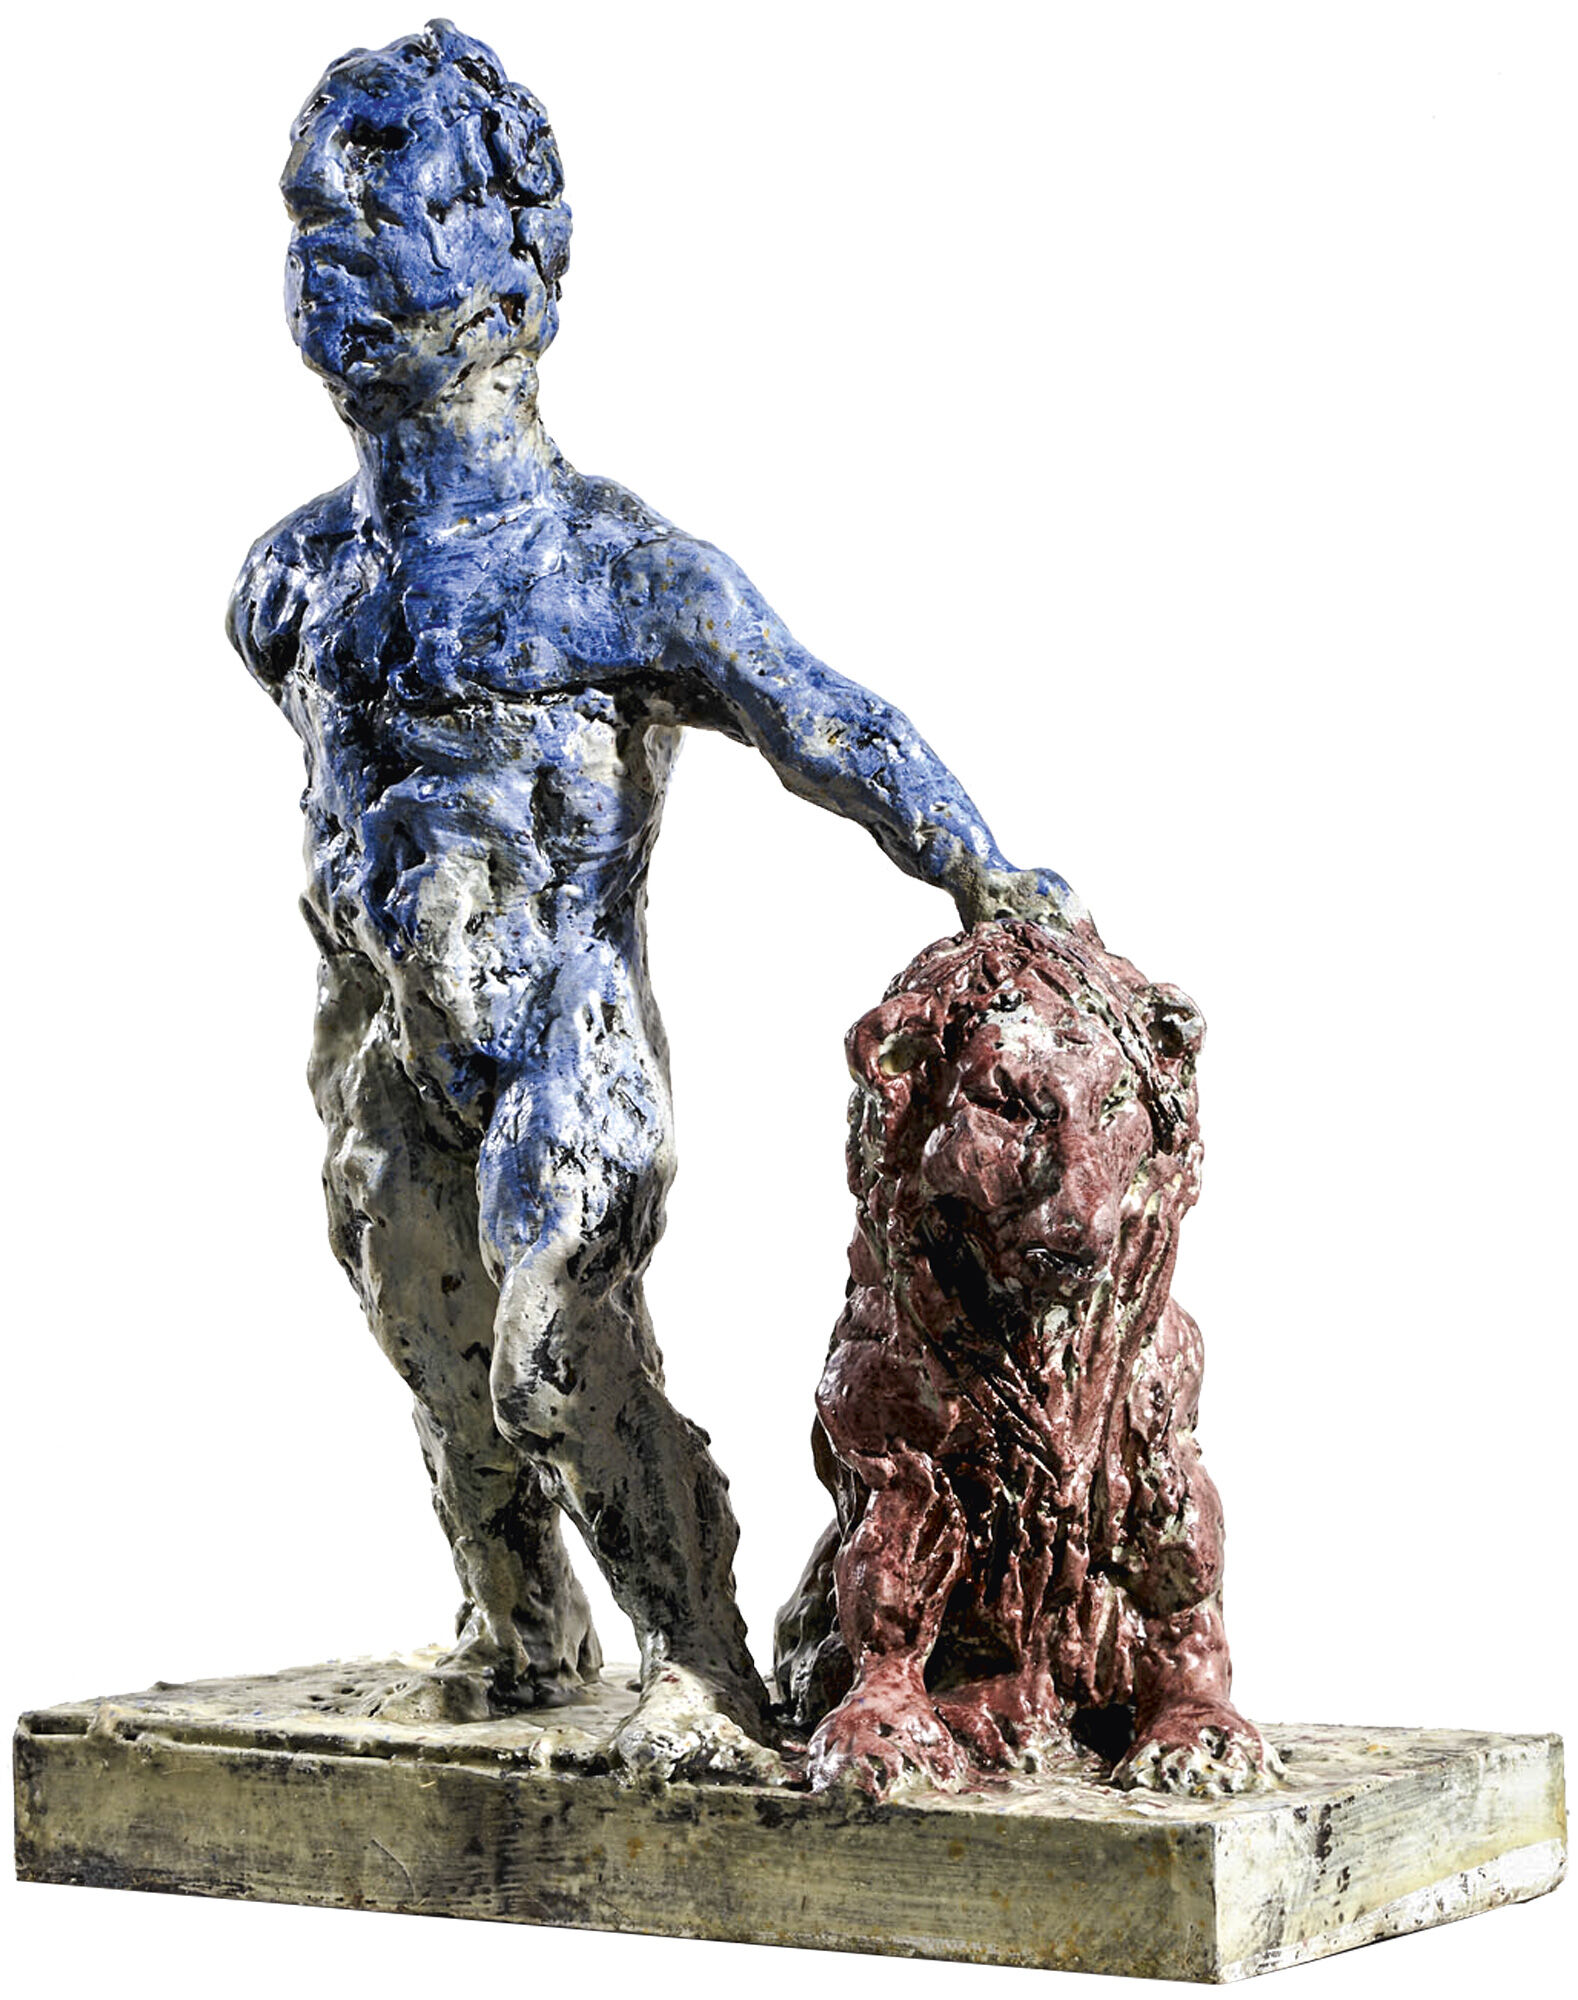 Skulptur "Löwe" (2018), Bronze von Markus Lüpertz